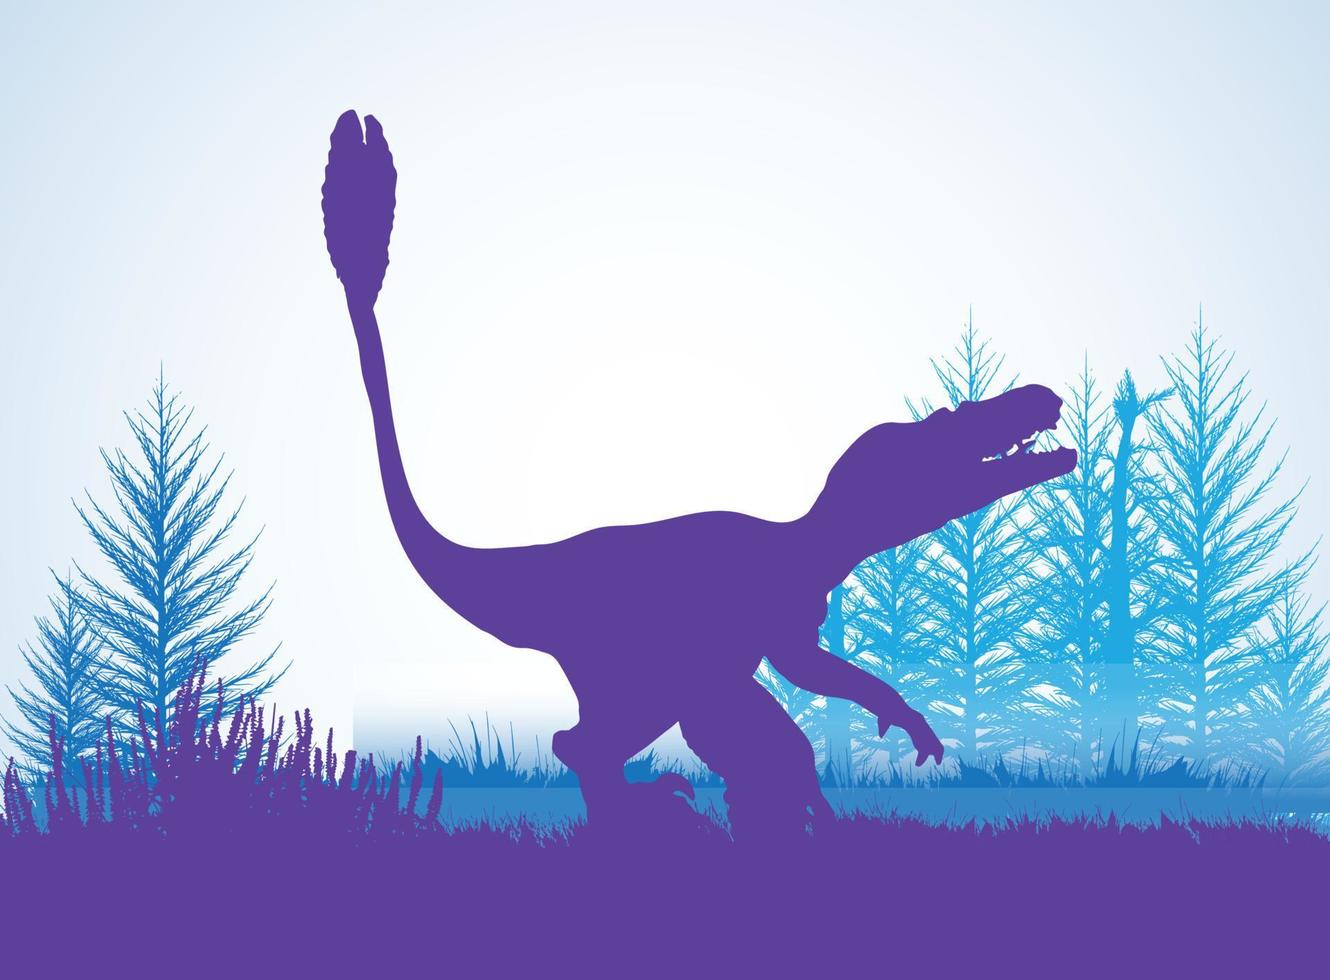 gevederde velociraptor dinosaurussen silhouetten in prehistorische omgeving overlappende lagen decoratieve achtergrond banner abstracte vectorillustratie vector